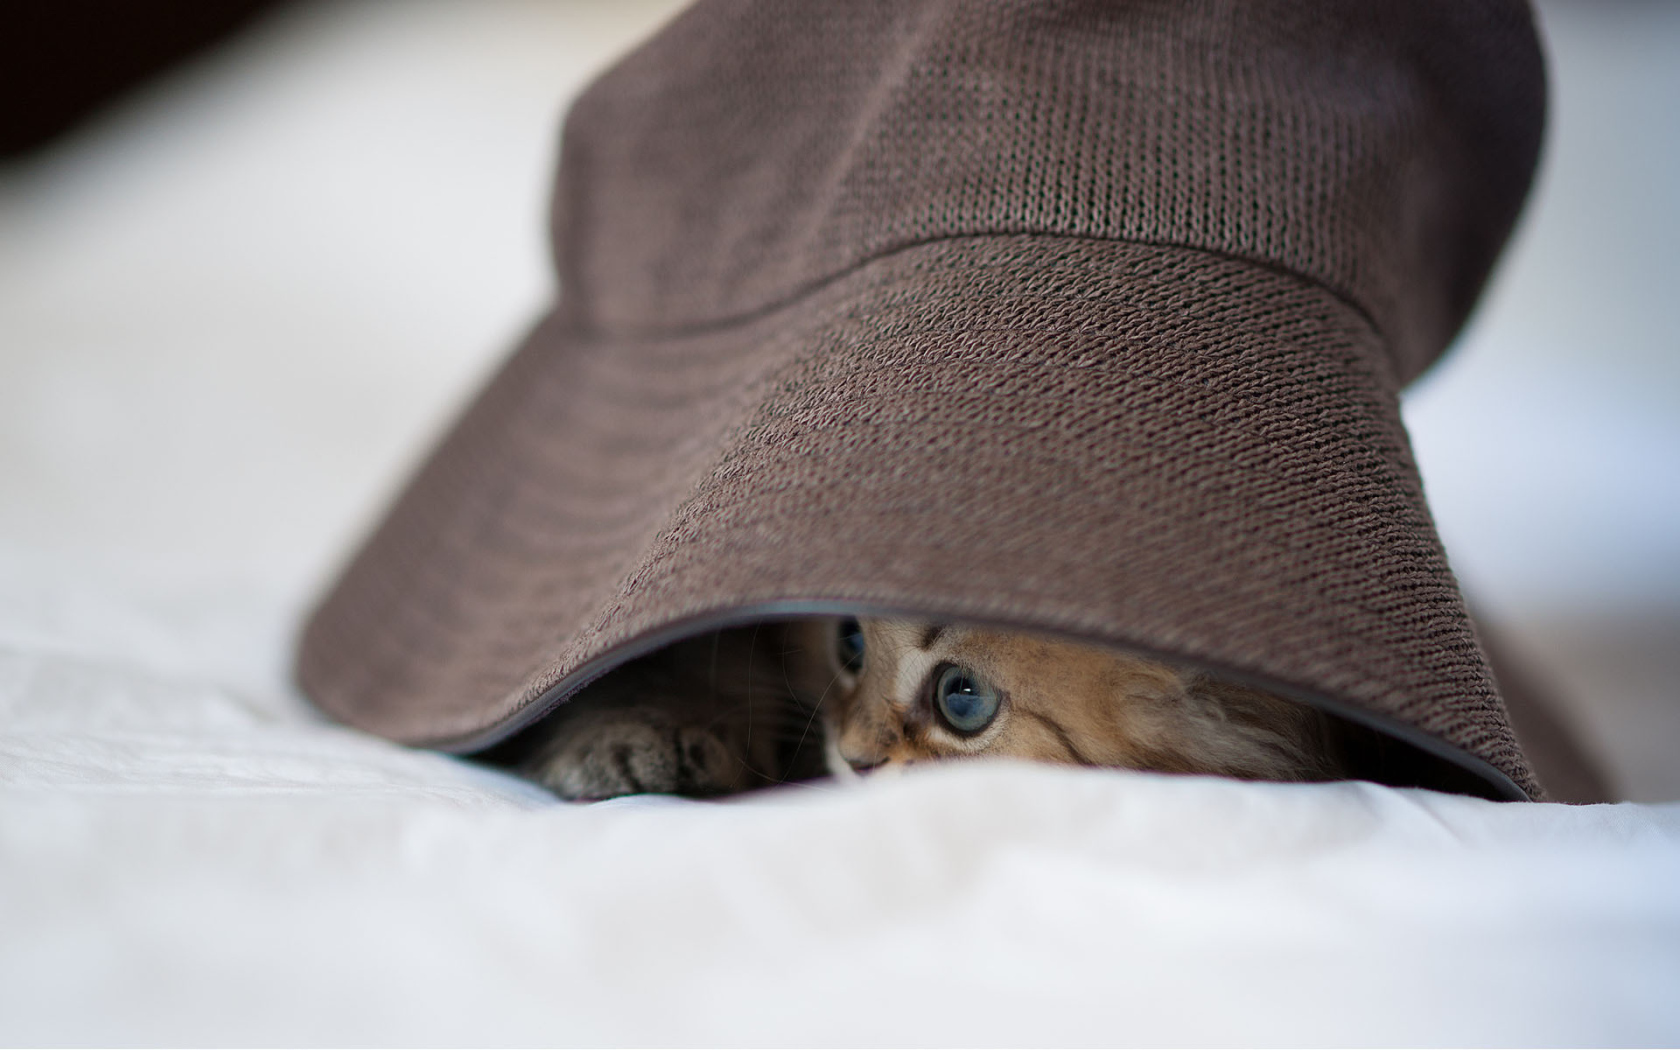 Котенок под шляпой